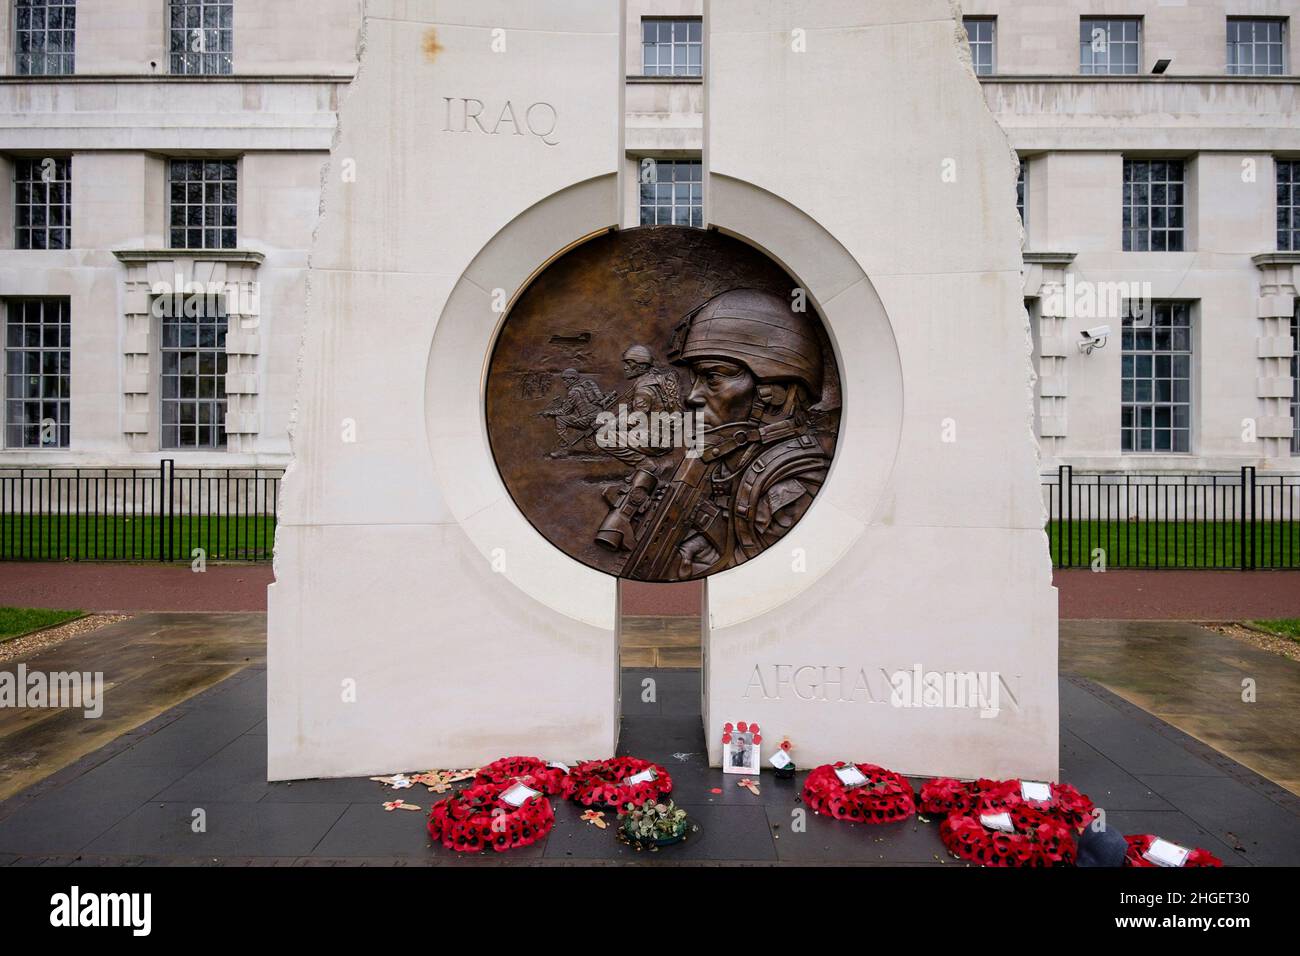 Iraq e Afghanistan War Memorial, Victoria Embankment Gardens, Londra, Regno Unito Foto Stock